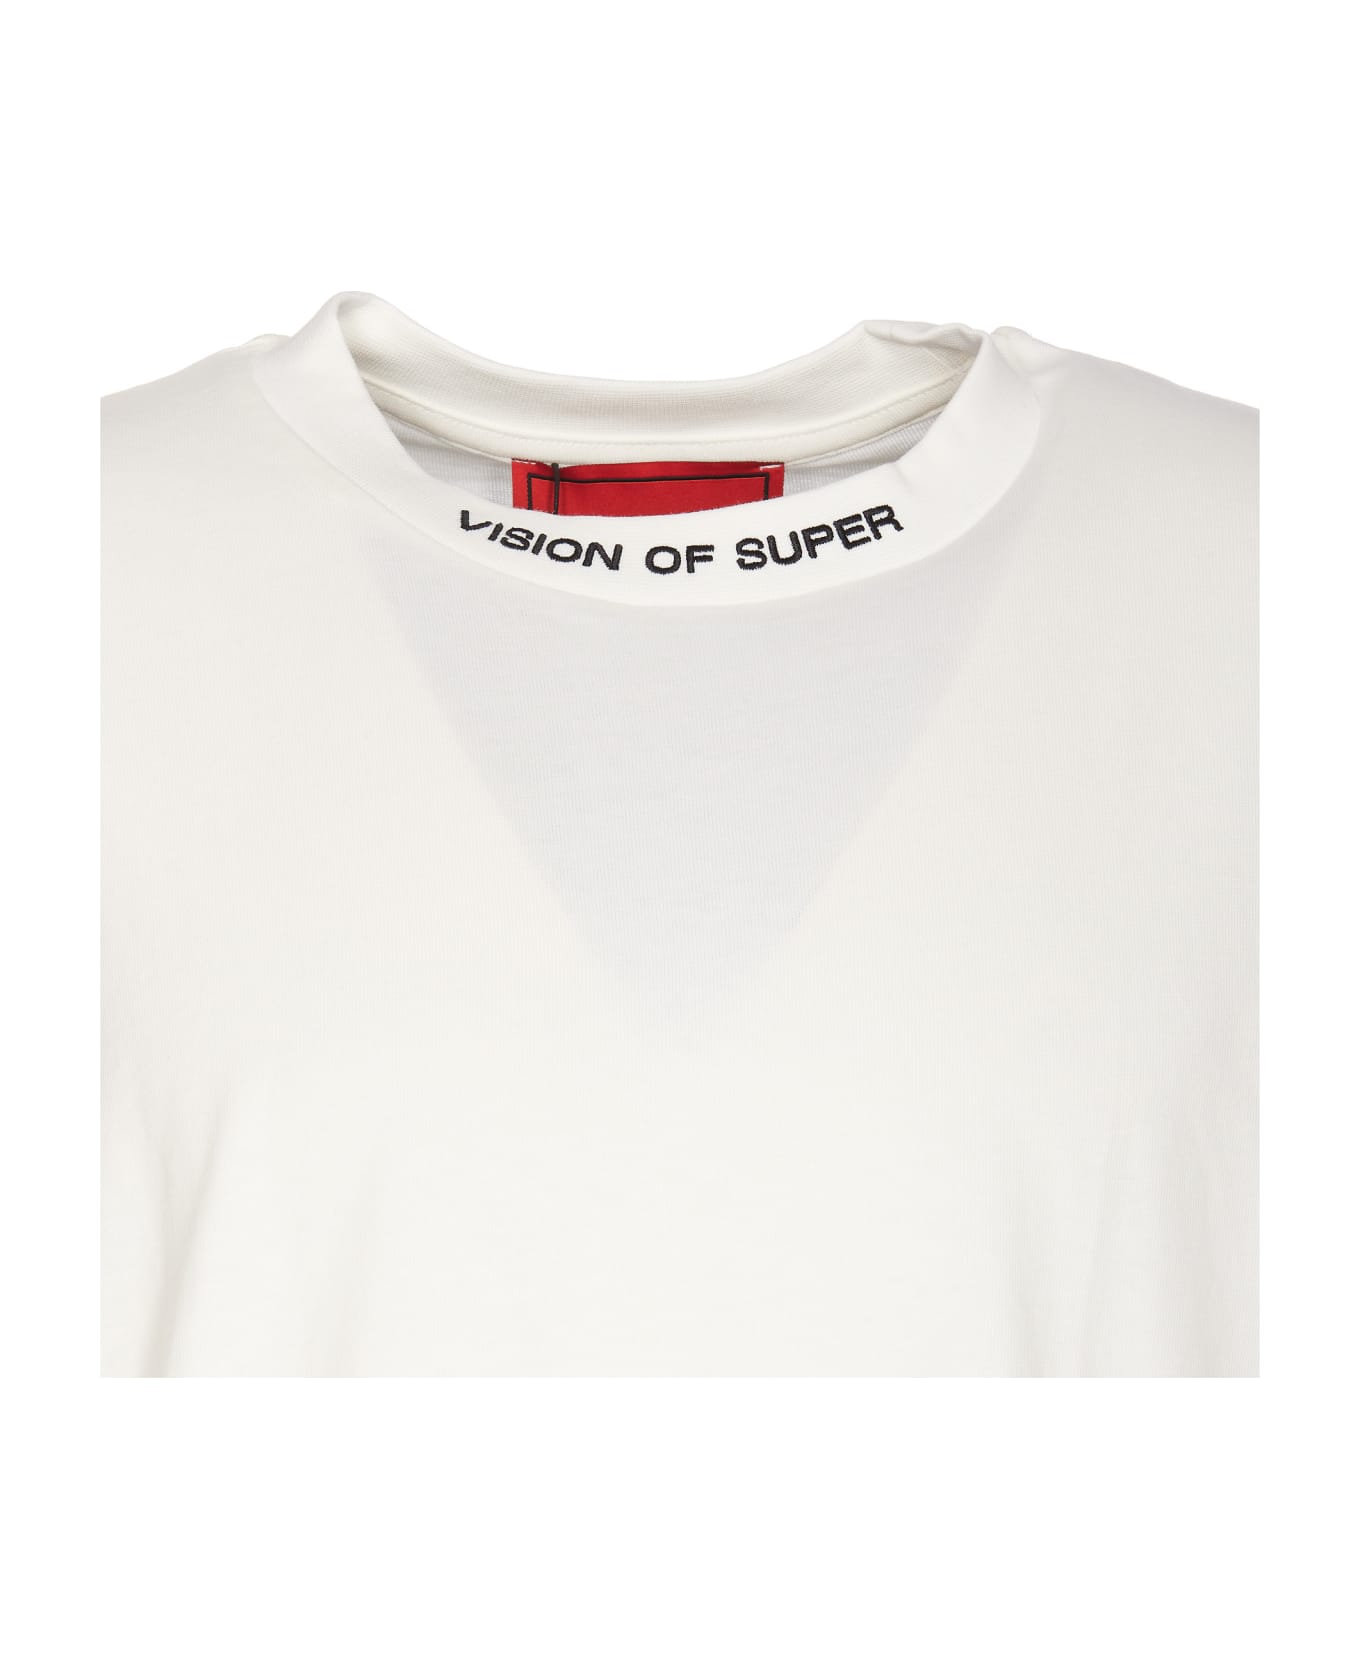 Vision of Super Logo T-shirt - White